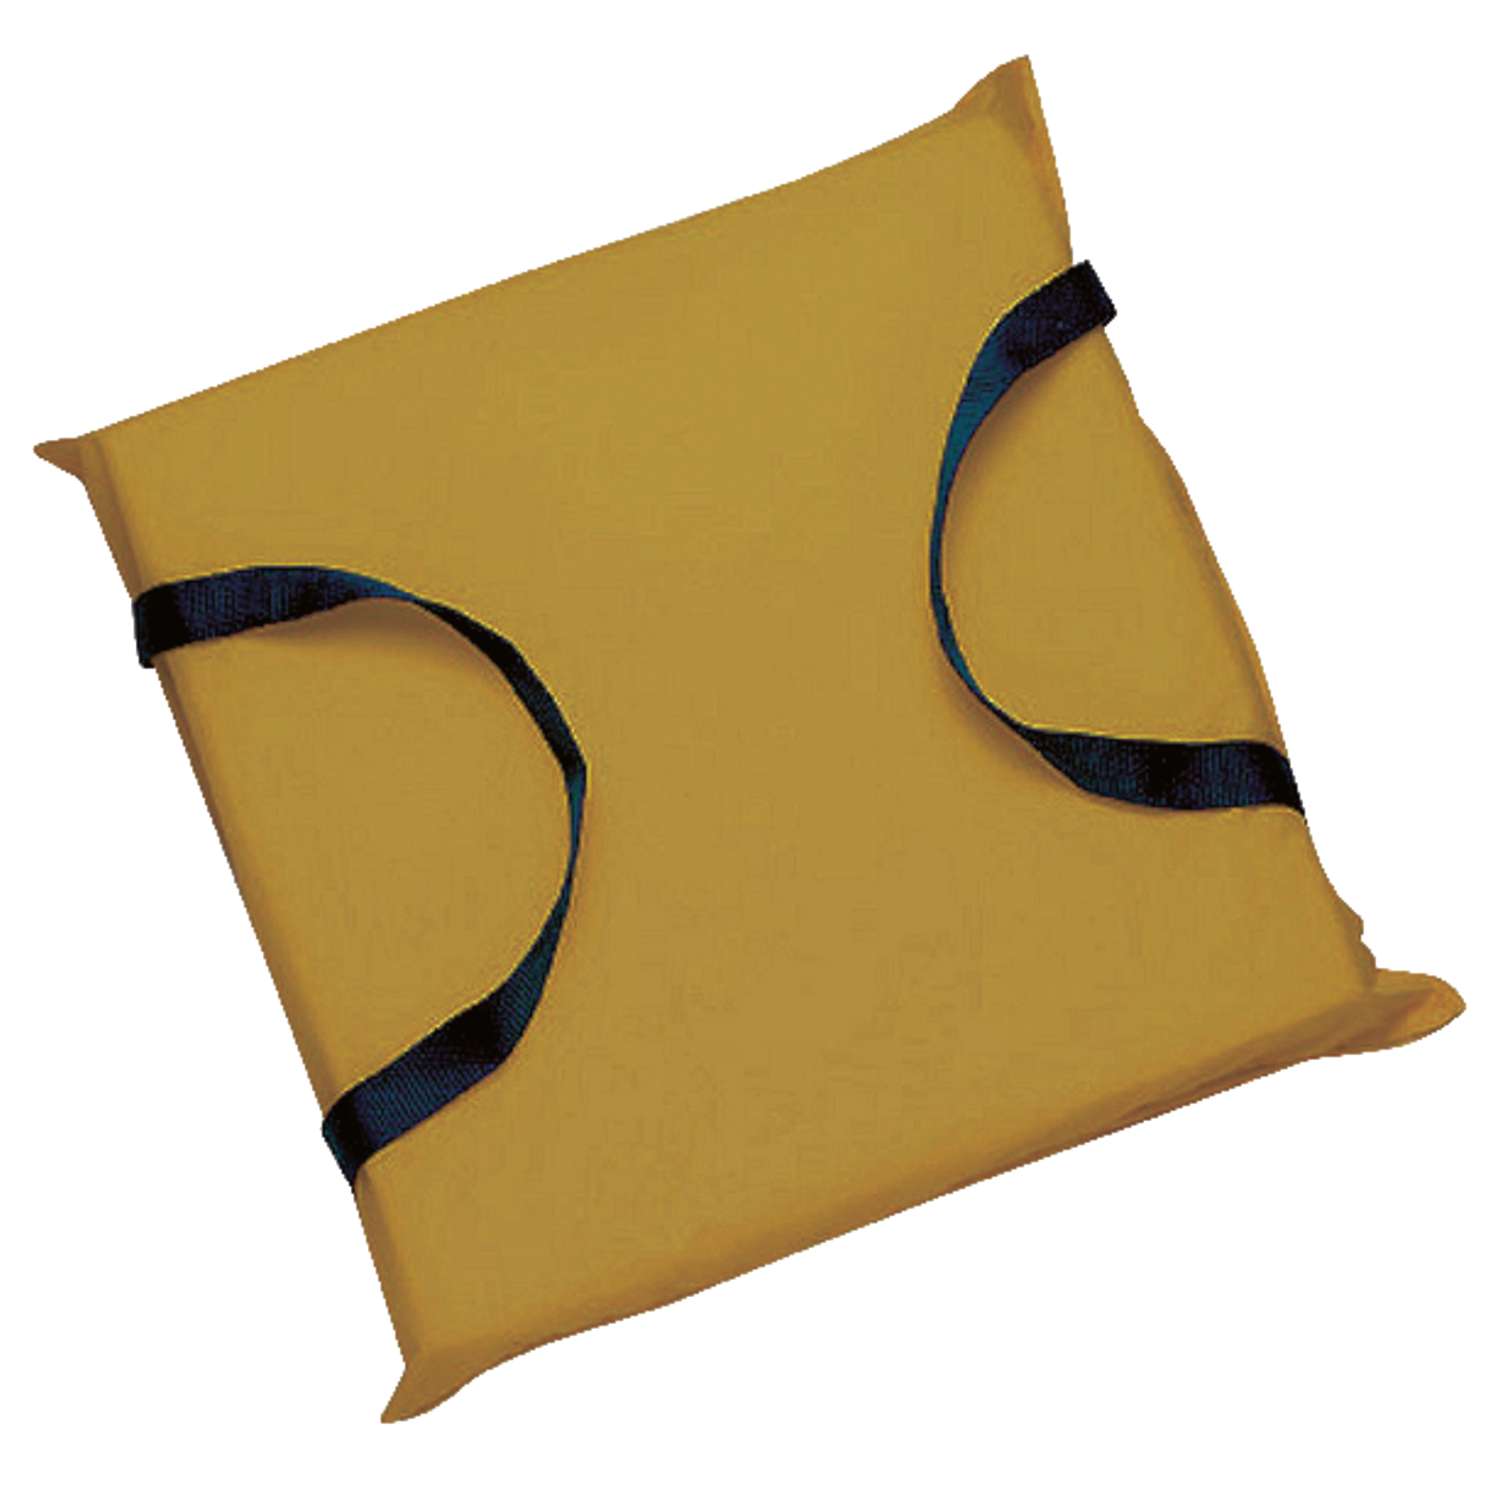 SEACHOICE Foam Emergency Marine Flotation Cushion 15-Inch Safety Yellow 